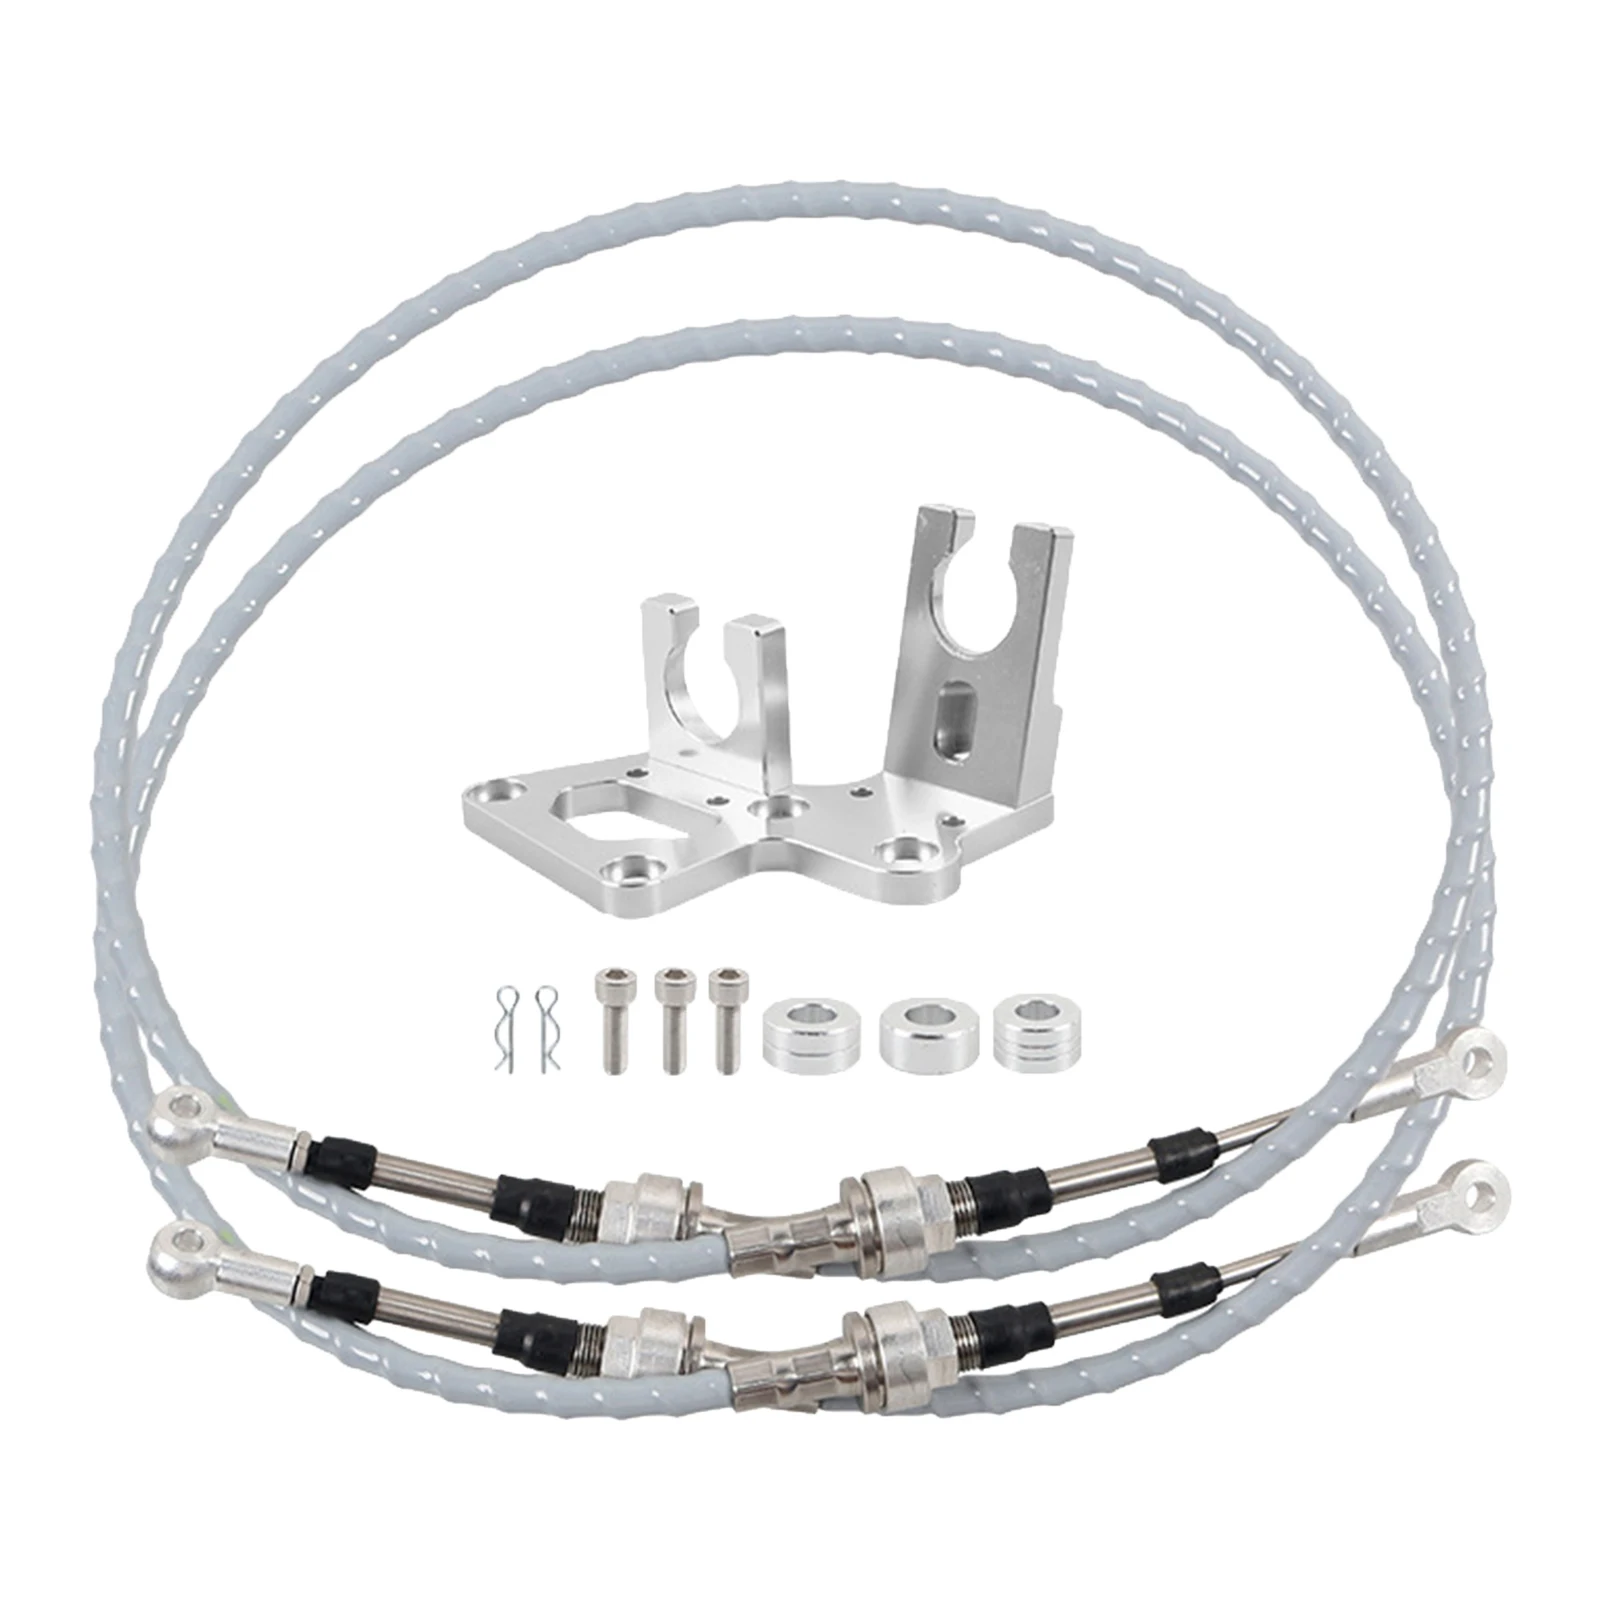 RSX Trans Shifter Cable Bracket Kit for Honda Civic K Swap Series EF EG EK DC2 Super strong / stretch resistant